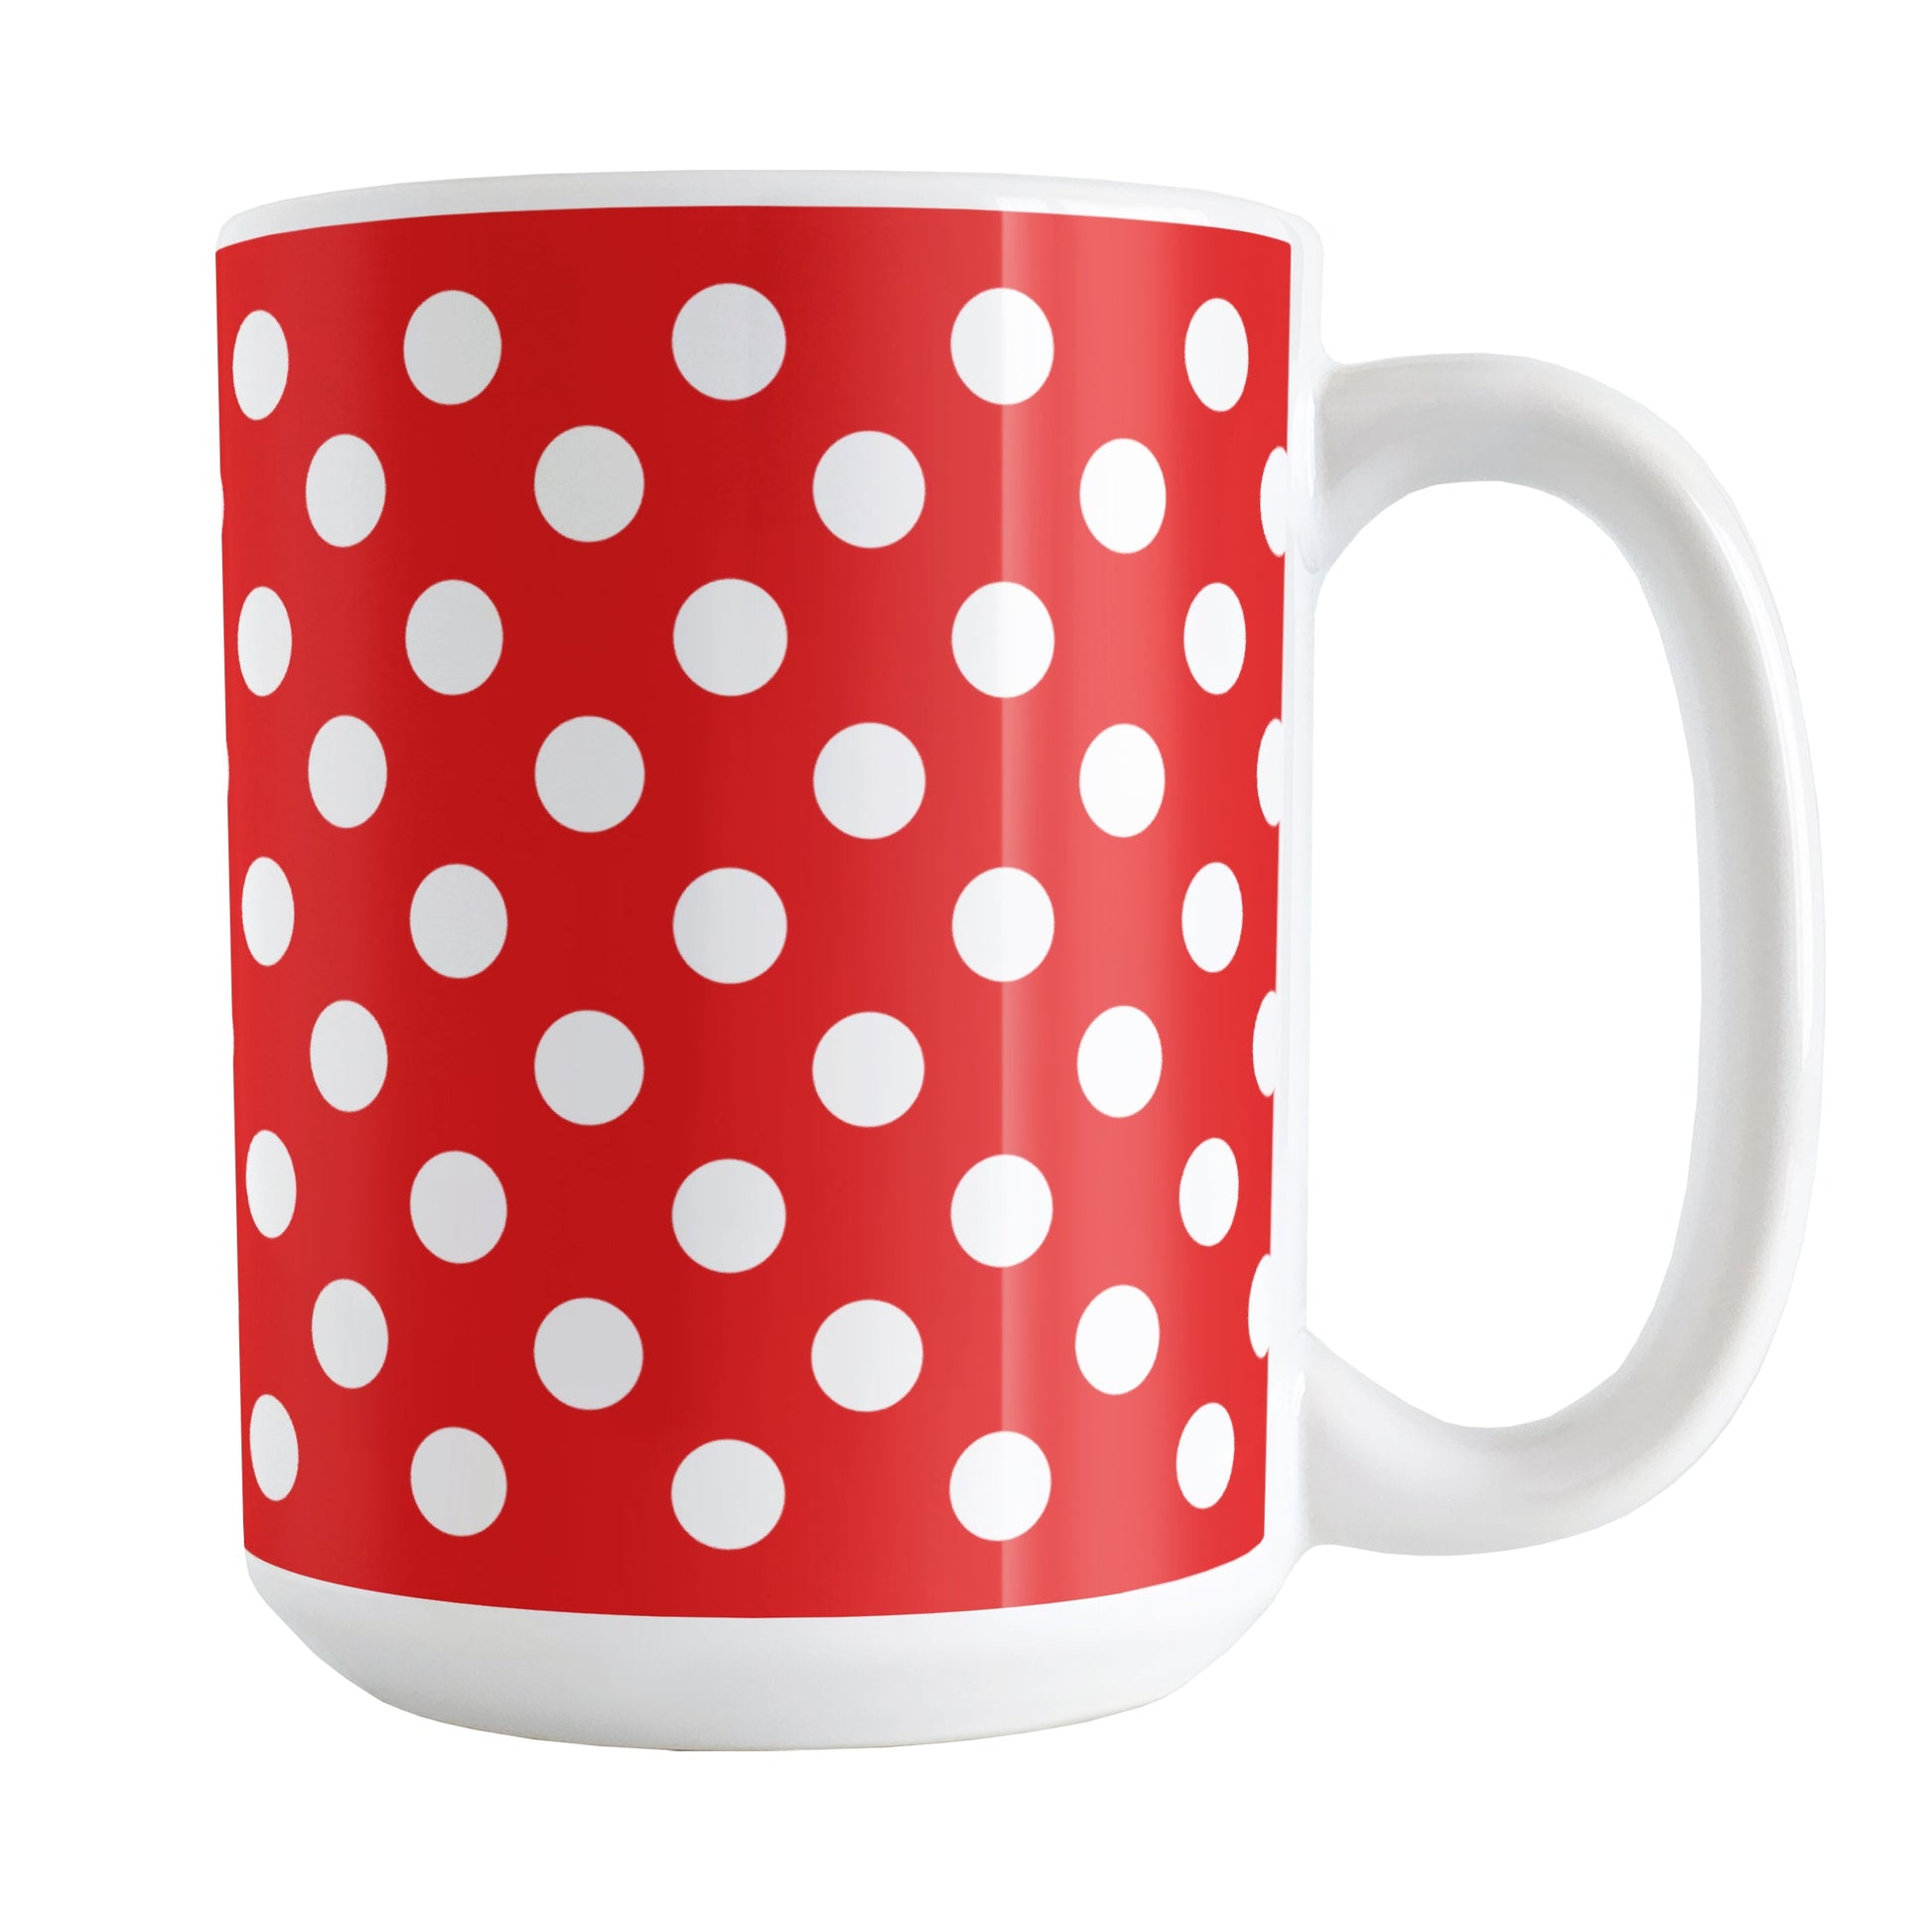 Red Polka Dot Mug (15oz) at Amy's Coffee Mugs